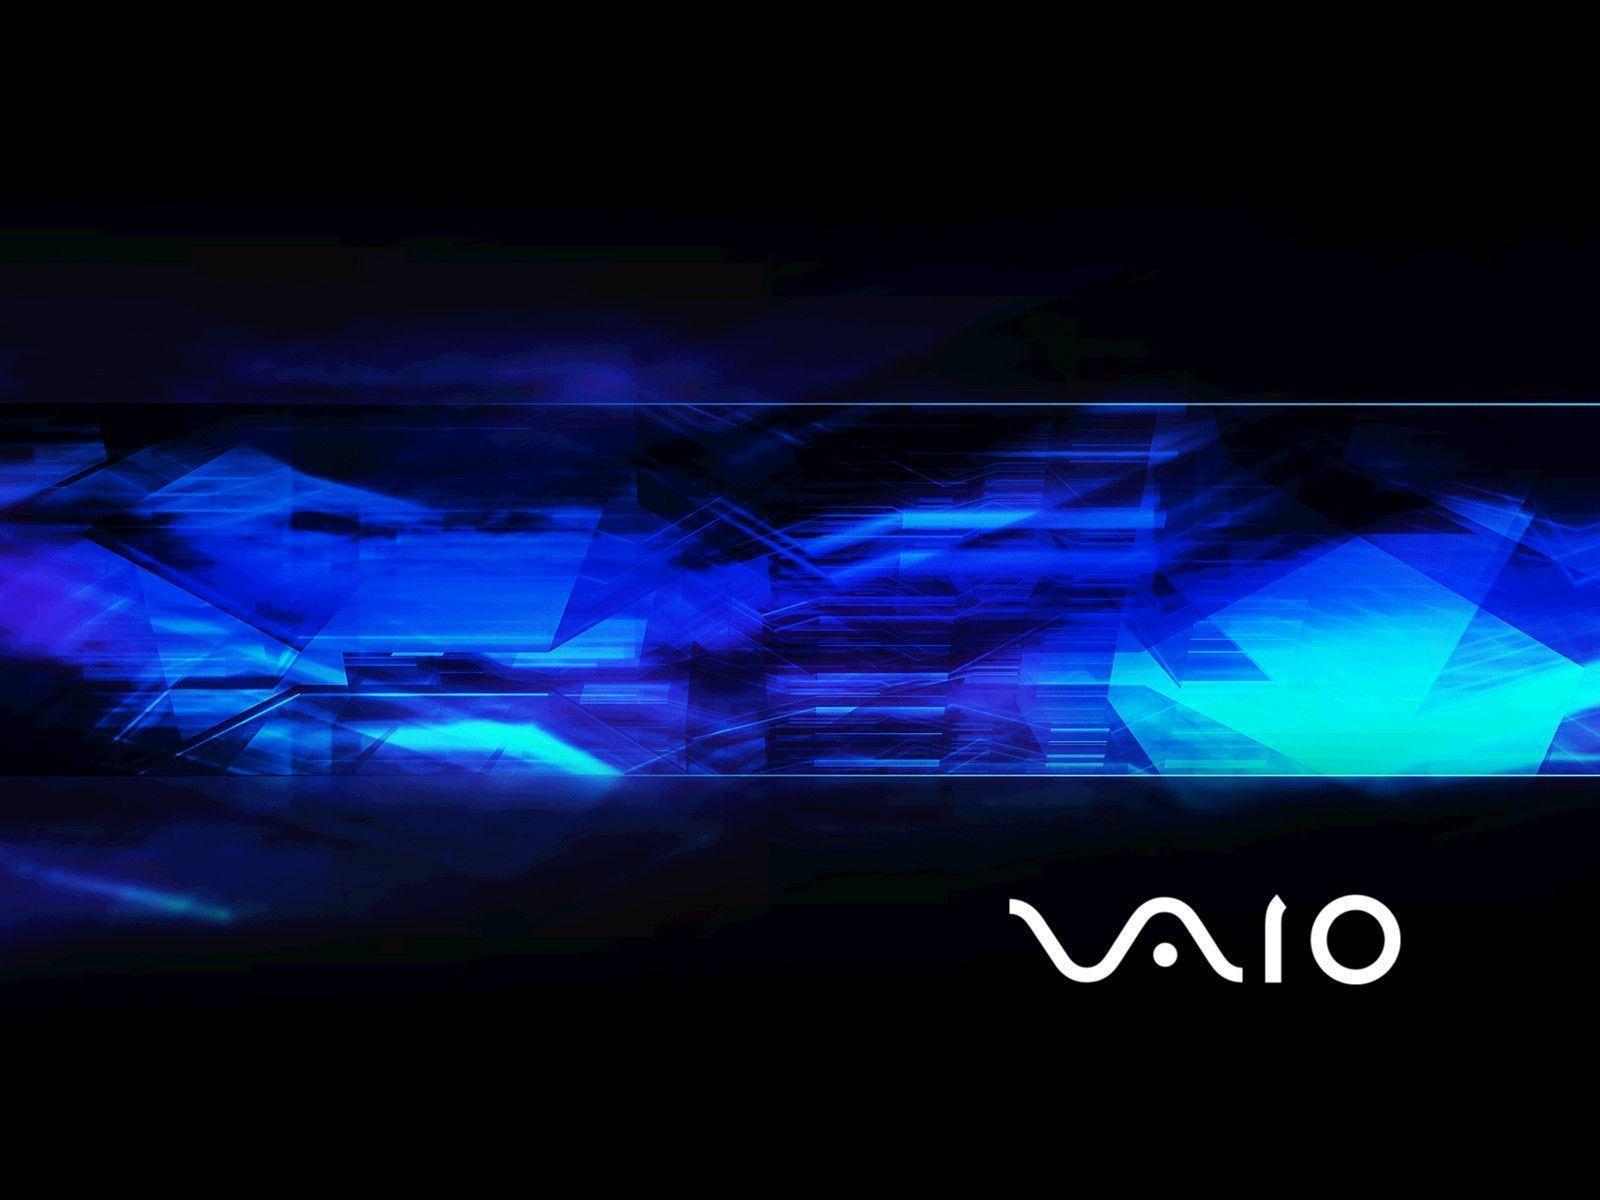 Hình nền Sony Vaio miễn phí là một điểm nhấn không thể thiếu cho máy tính của bạn. Với những thiết kế độc đáo và đẹp mắt, hình nền Sony Vaio sẽ làm cho màn hình của bạn trở nên mới lạ và thu hút hơn bao giờ hết. Tải ngay và tận hưởng những bức tranh nền tuyệt đẹp từ Sony Vaio!